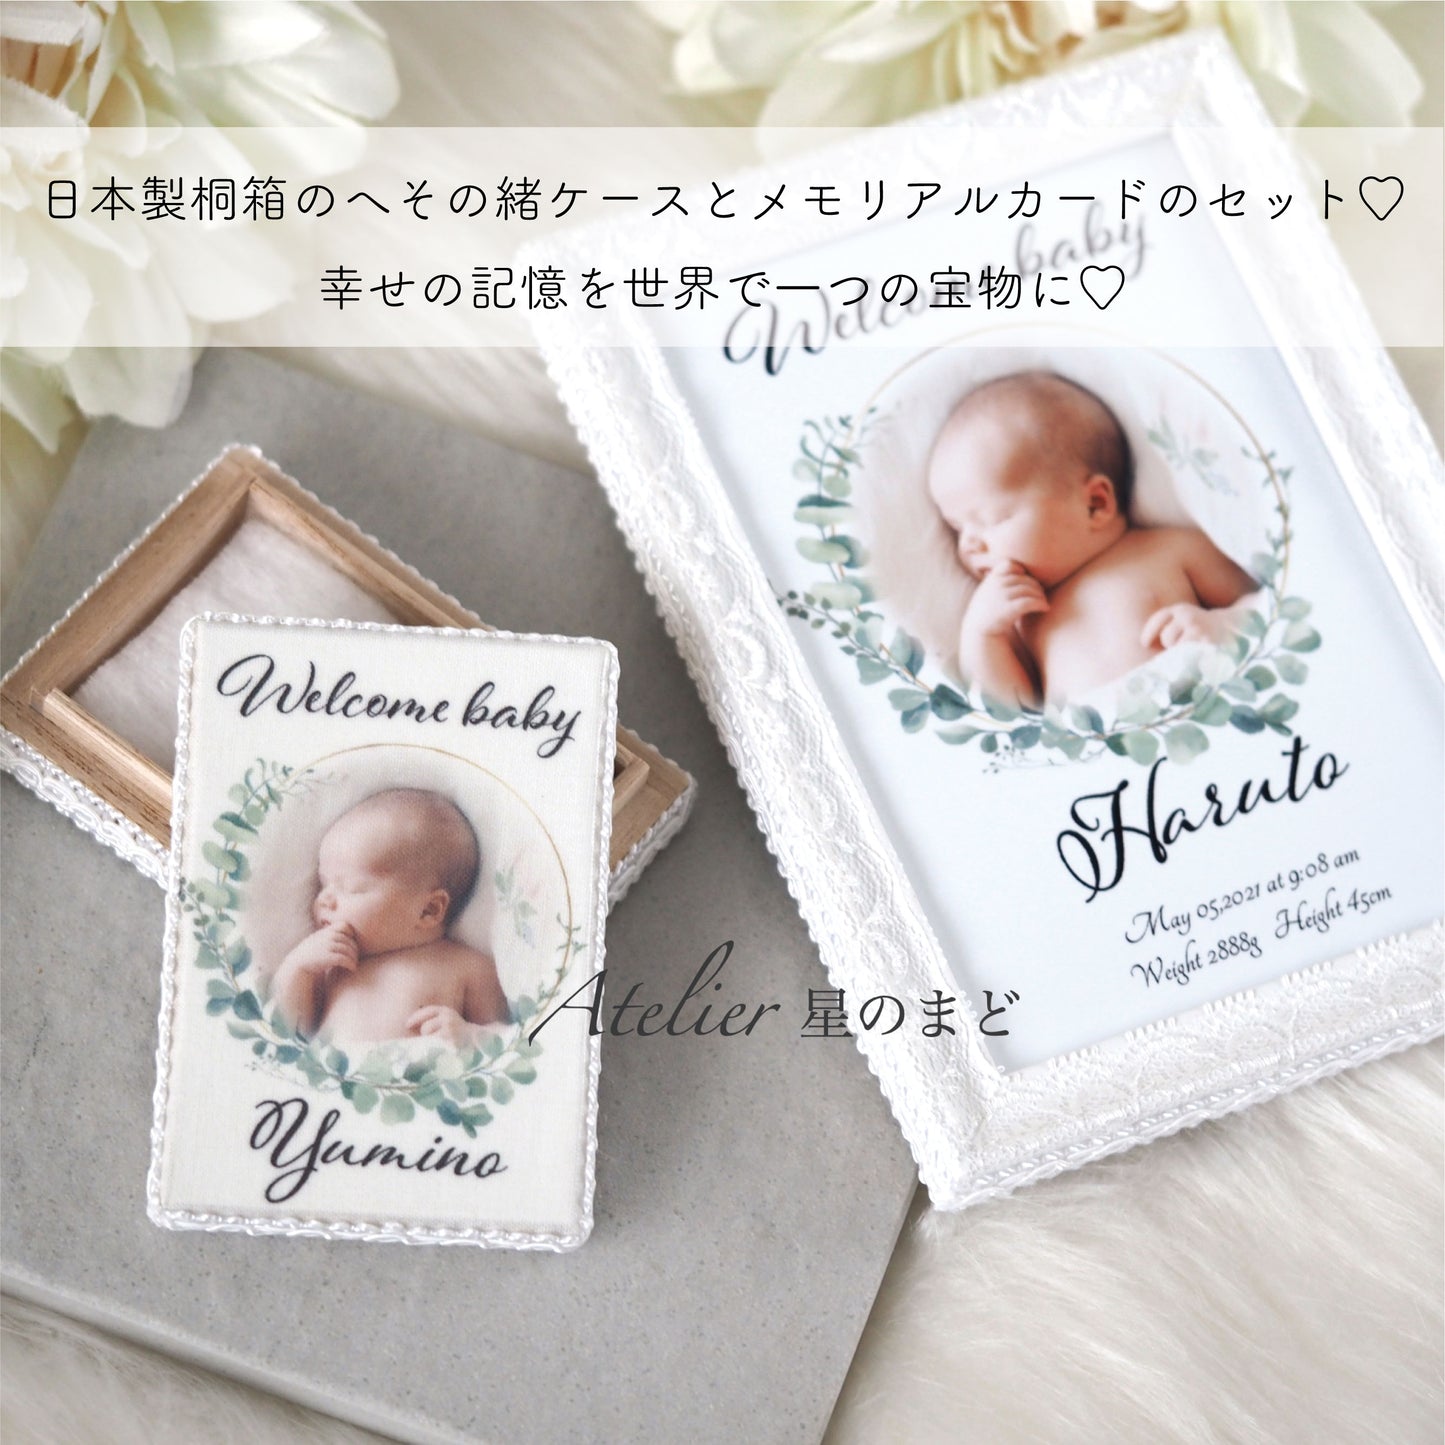 メモリアルポスター 赤ちゃんの記念に　 お洒落で可愛い命名書 　 ユーカリのリースに包まれて　プラチナグレード光沢紙で美しさ長持ち